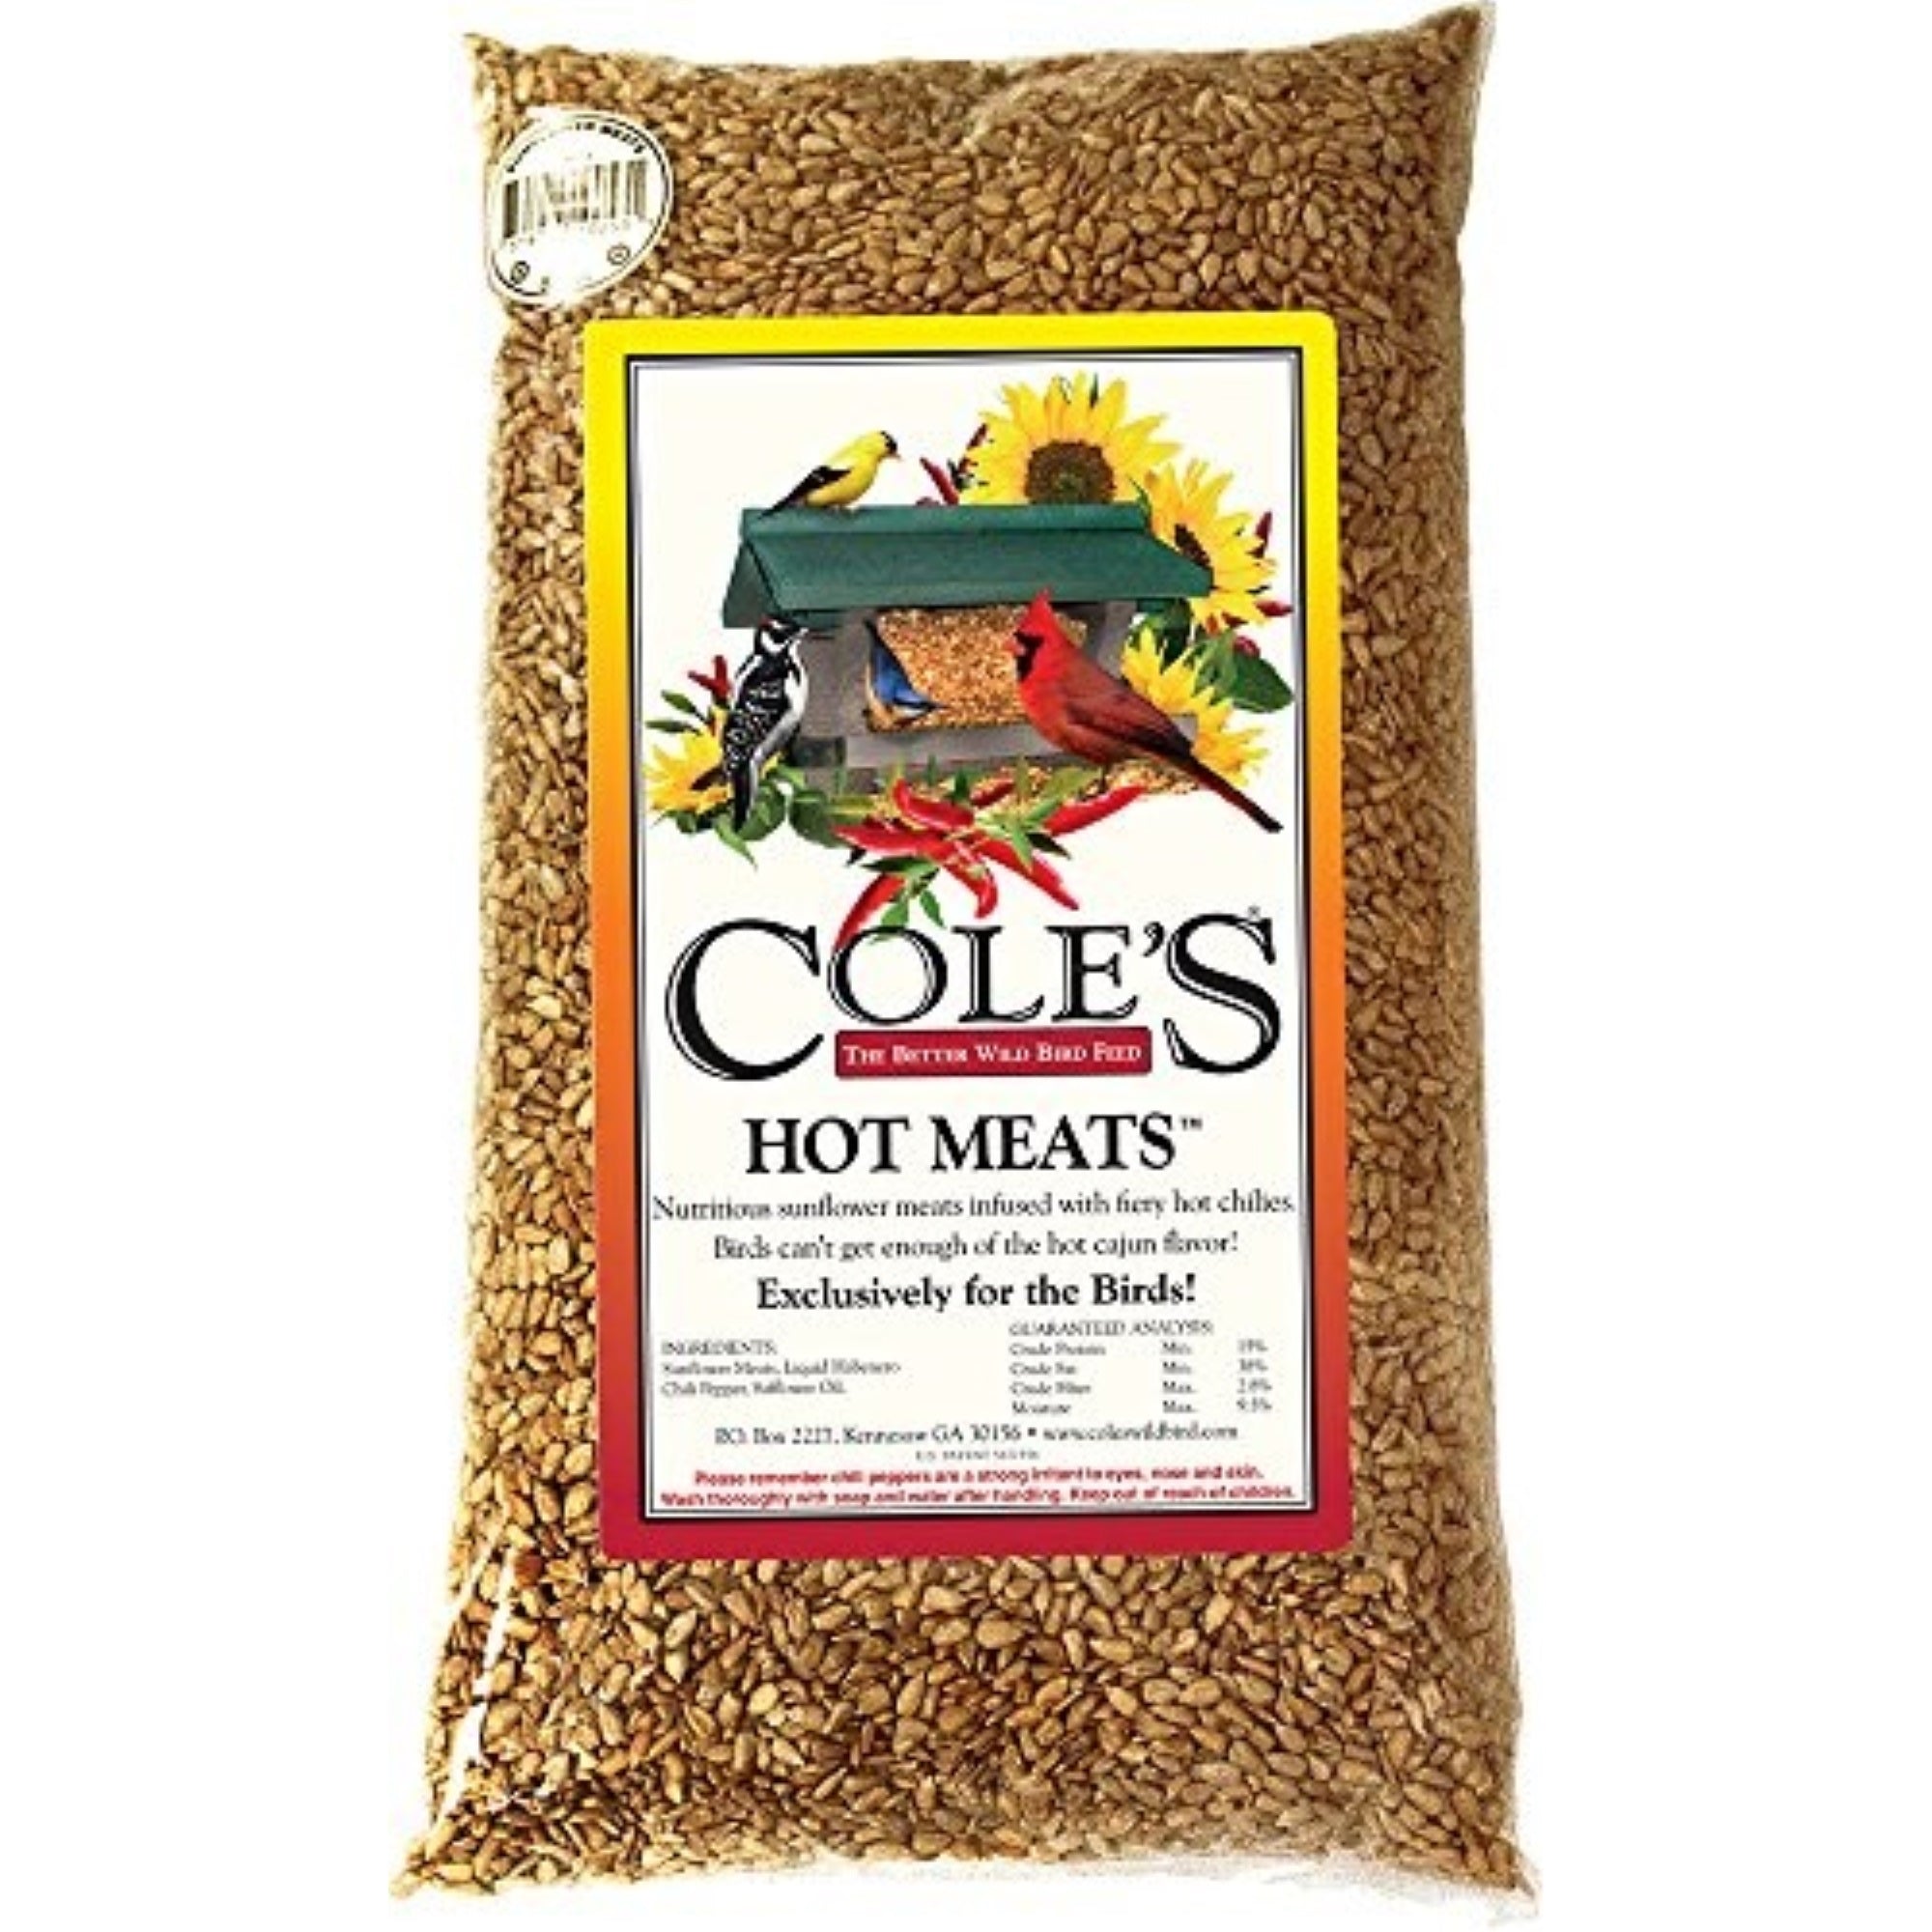 Cole's Hot Meats Outdoor Wild Bird Food